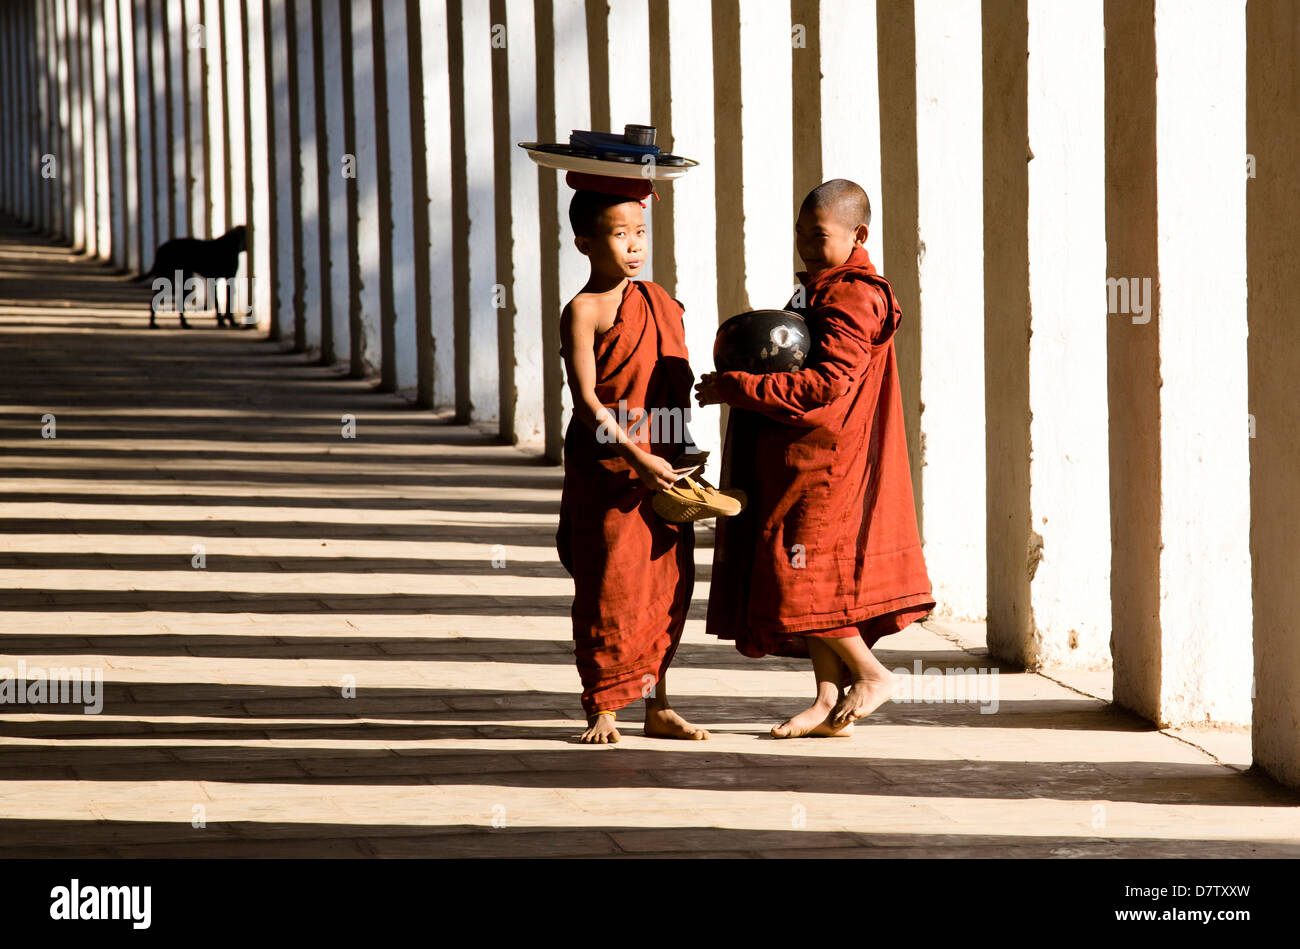 Les moines bouddhistes débutants recueillir l'aumône, debout dans l'ombre de colonnes à Shwezigon Paya, Nyaung U, Bagan, Birmanie Banque D'Images